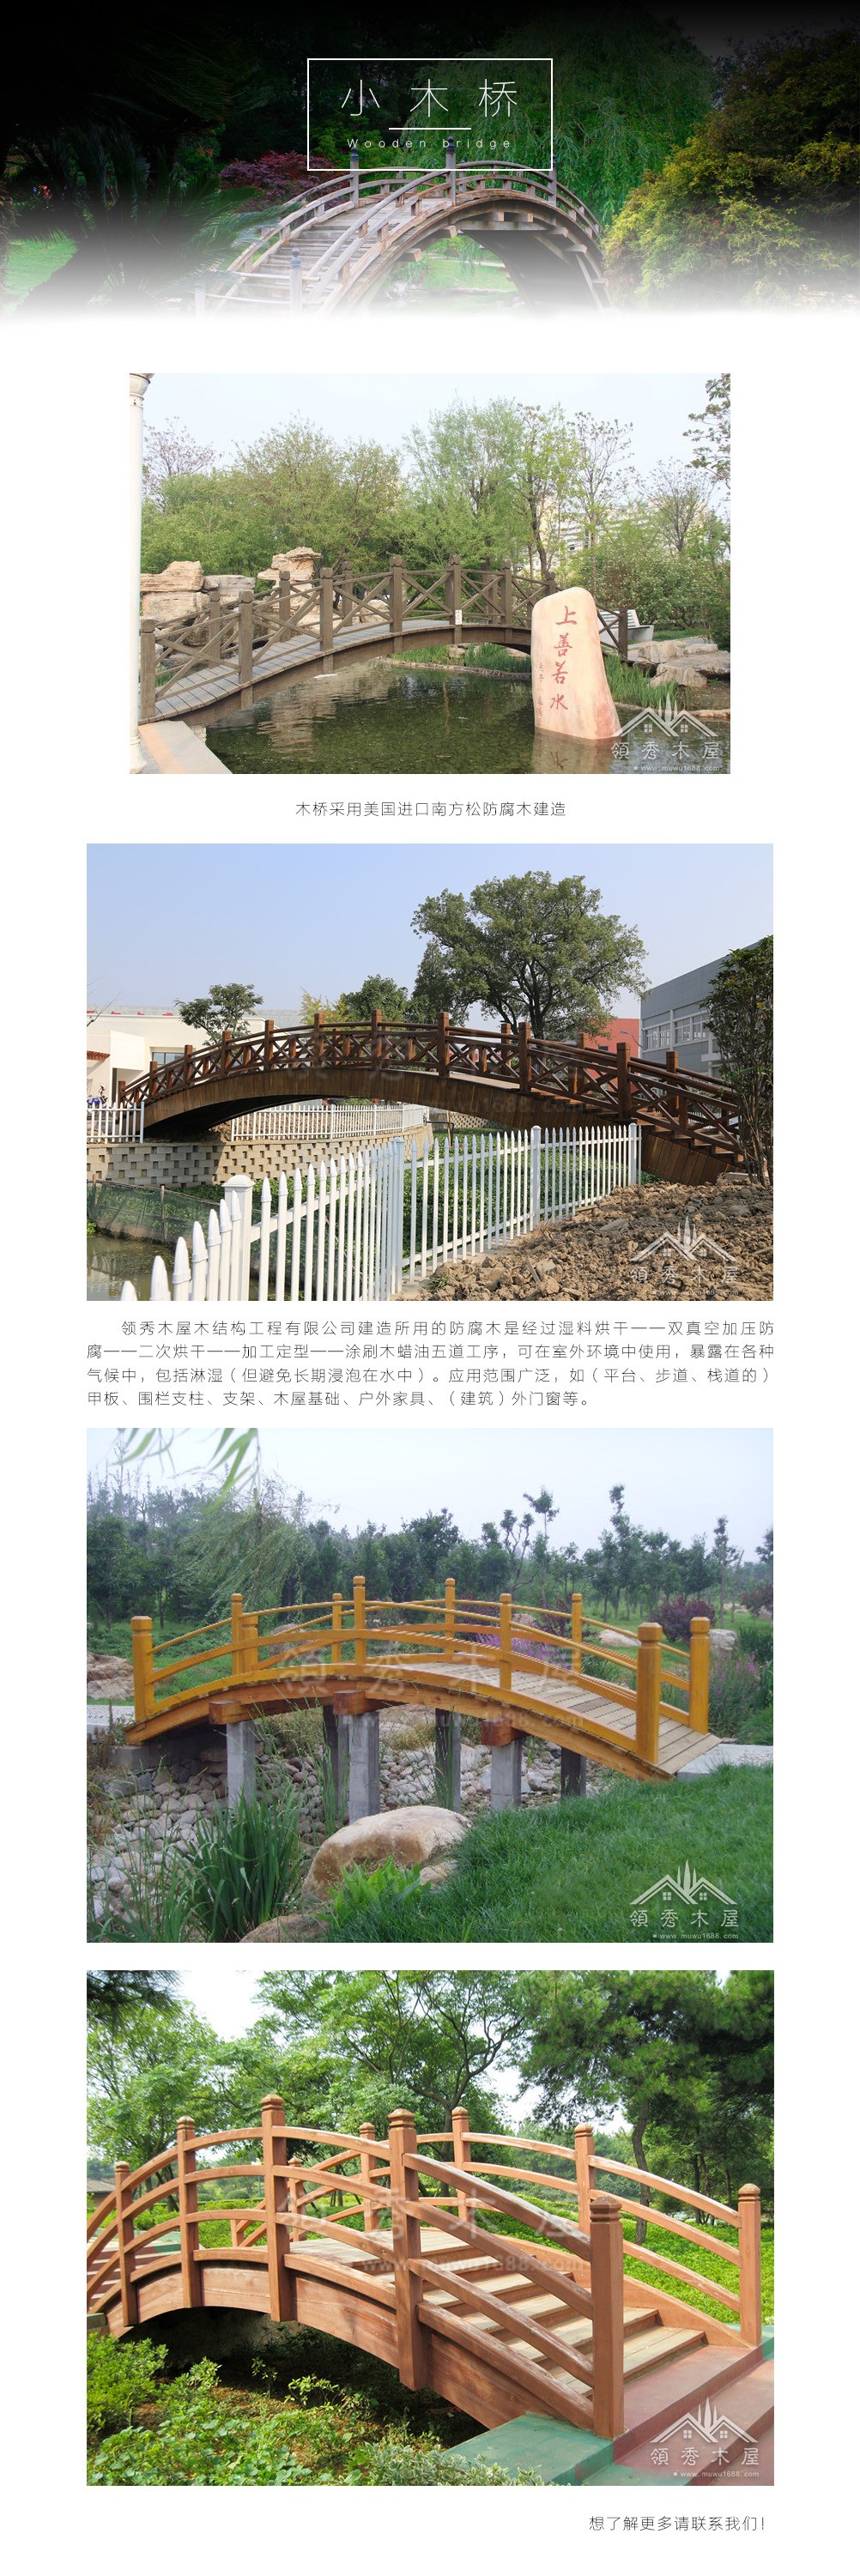 广东深圳领秀景观木结构设计规划—景观木桥